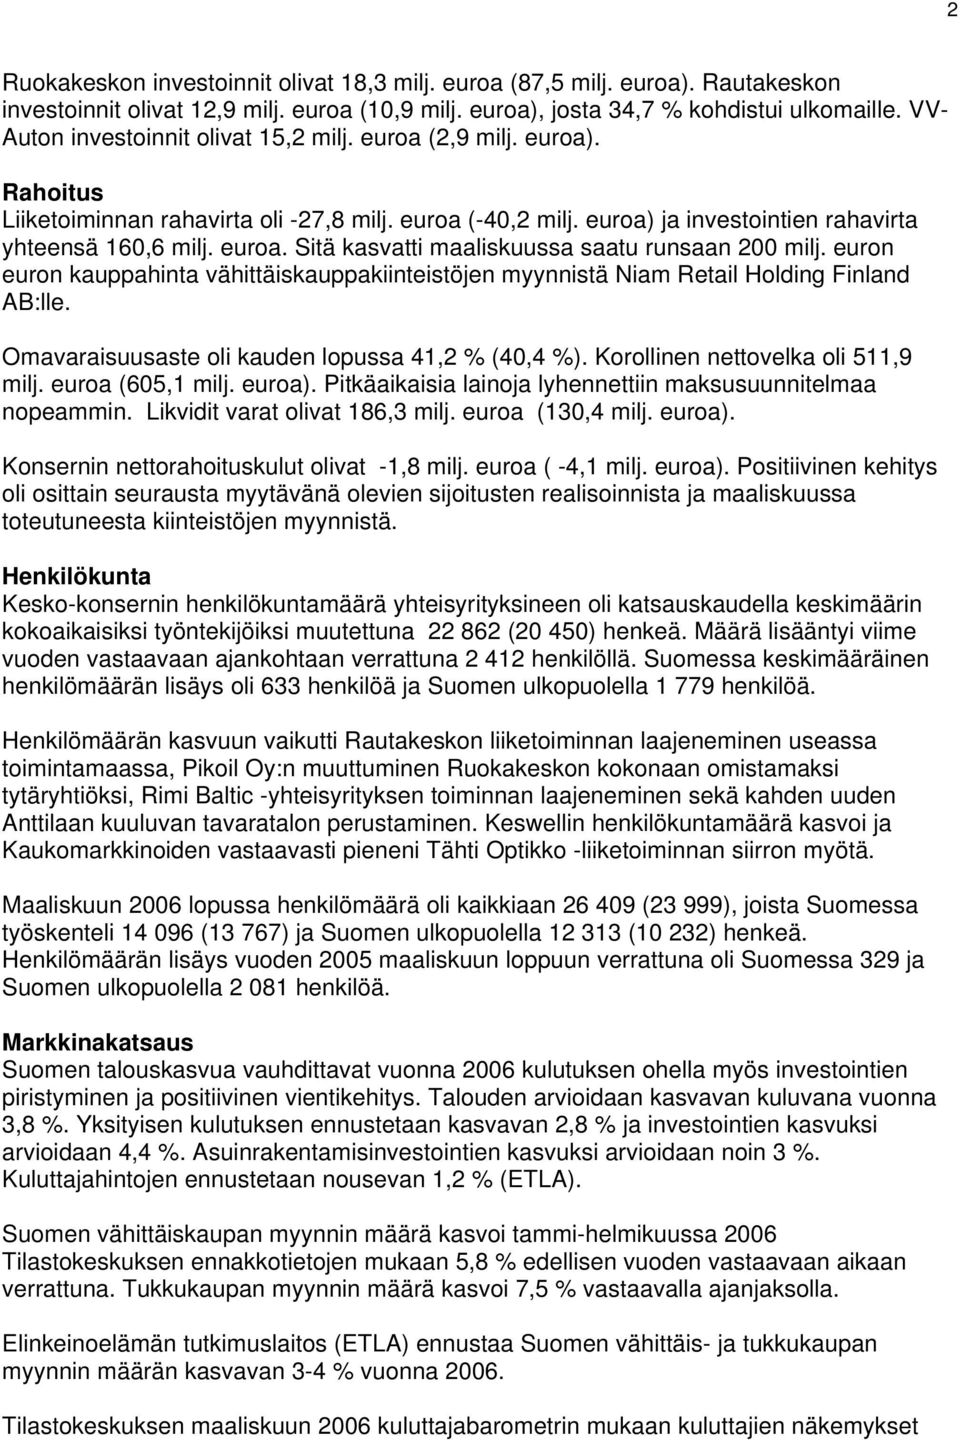 euron euron kauppahinta vähittäiskauppakiinteistöjen myynnistä Niam Retail Holding Finland AB:lle. Omavaraisuusaste oli kauden lopussa 41,2 % (40,4 %). Korollinen nettovelka oli 511,9 milj.